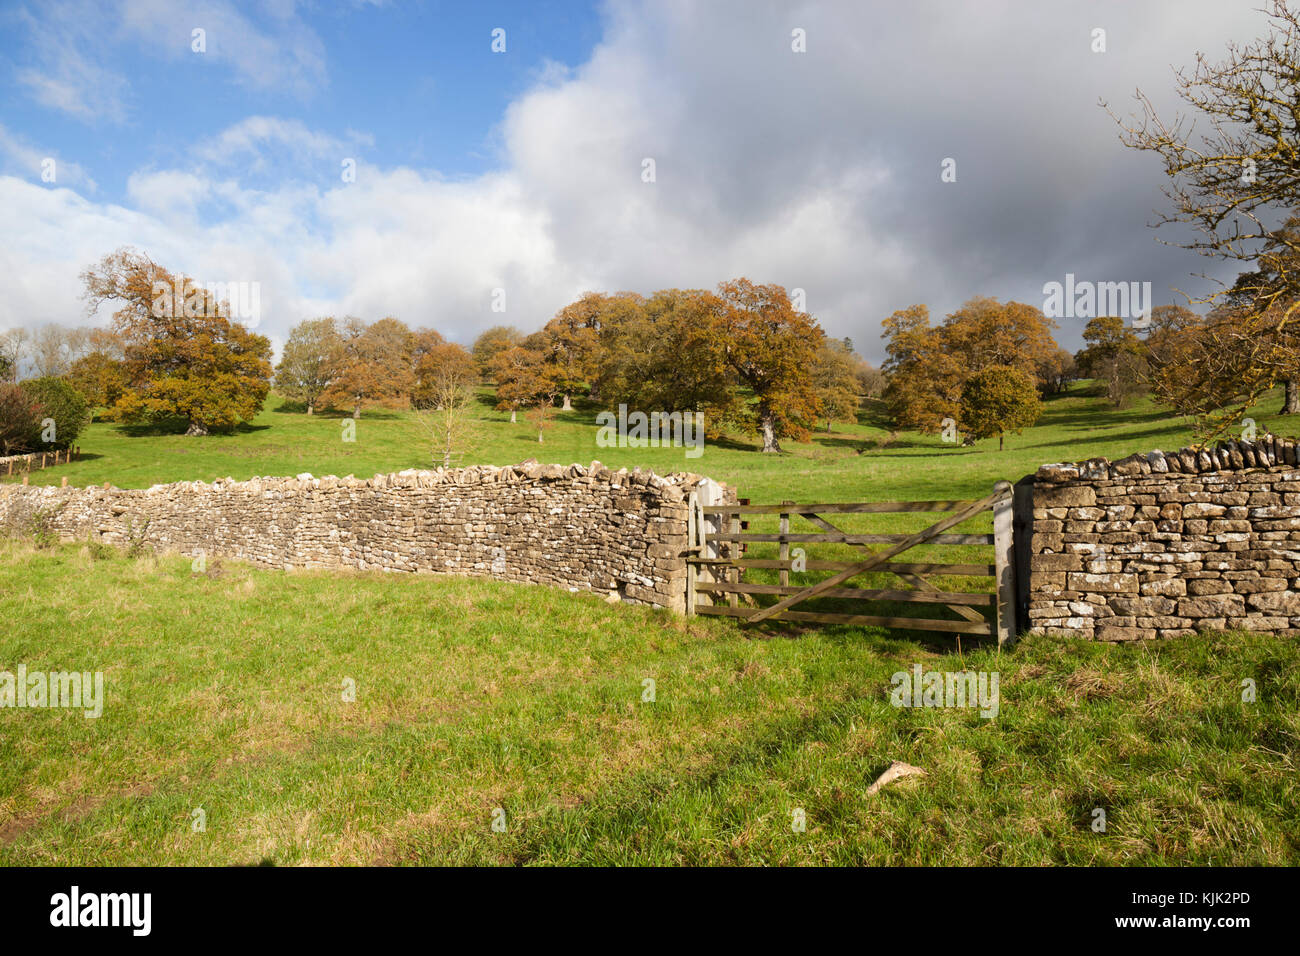 Cotswold trockene Mauer aus Stein und Holz- Fünf bar Gate mit Gras Felder und Bäume im Herbst hinter, Stowell, Cotswolds, Gloucestershire, England, United Kingd Stockfoto